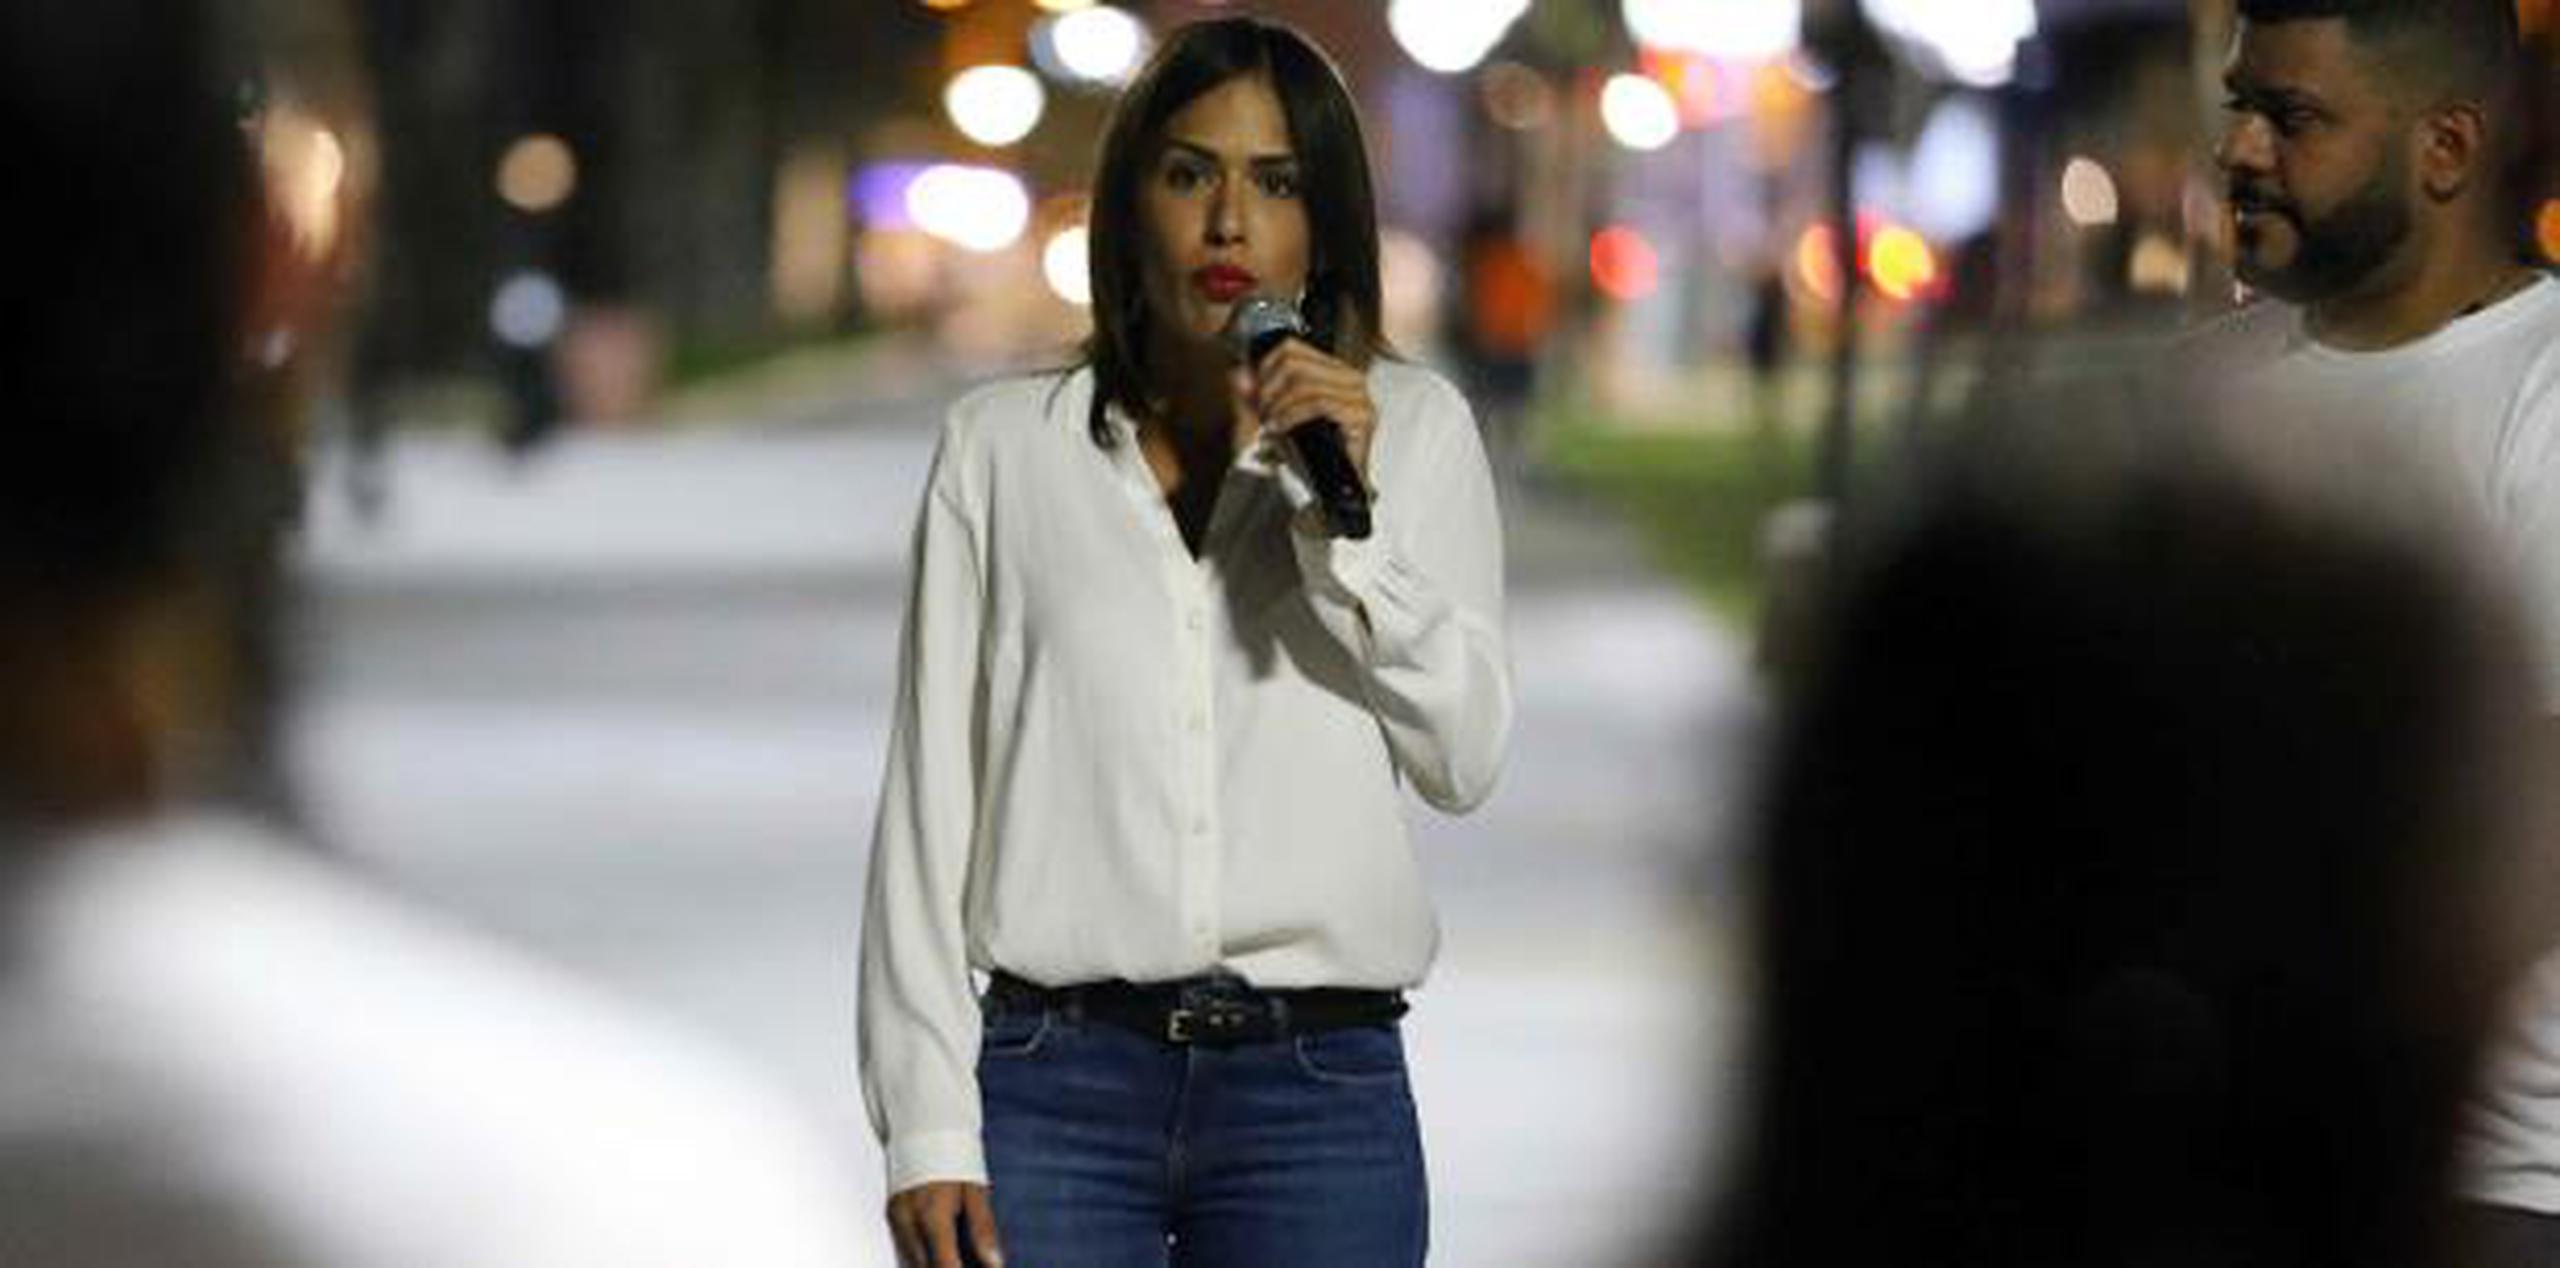 La Procuradora de las Mujeres participó esta noche en una vigilia en honor a Suliani Calderón Nieves, la sexta víctima de violencia de genero de este año, en el Malecón de Cataño. (juan.martinez@gfrmedia.com)